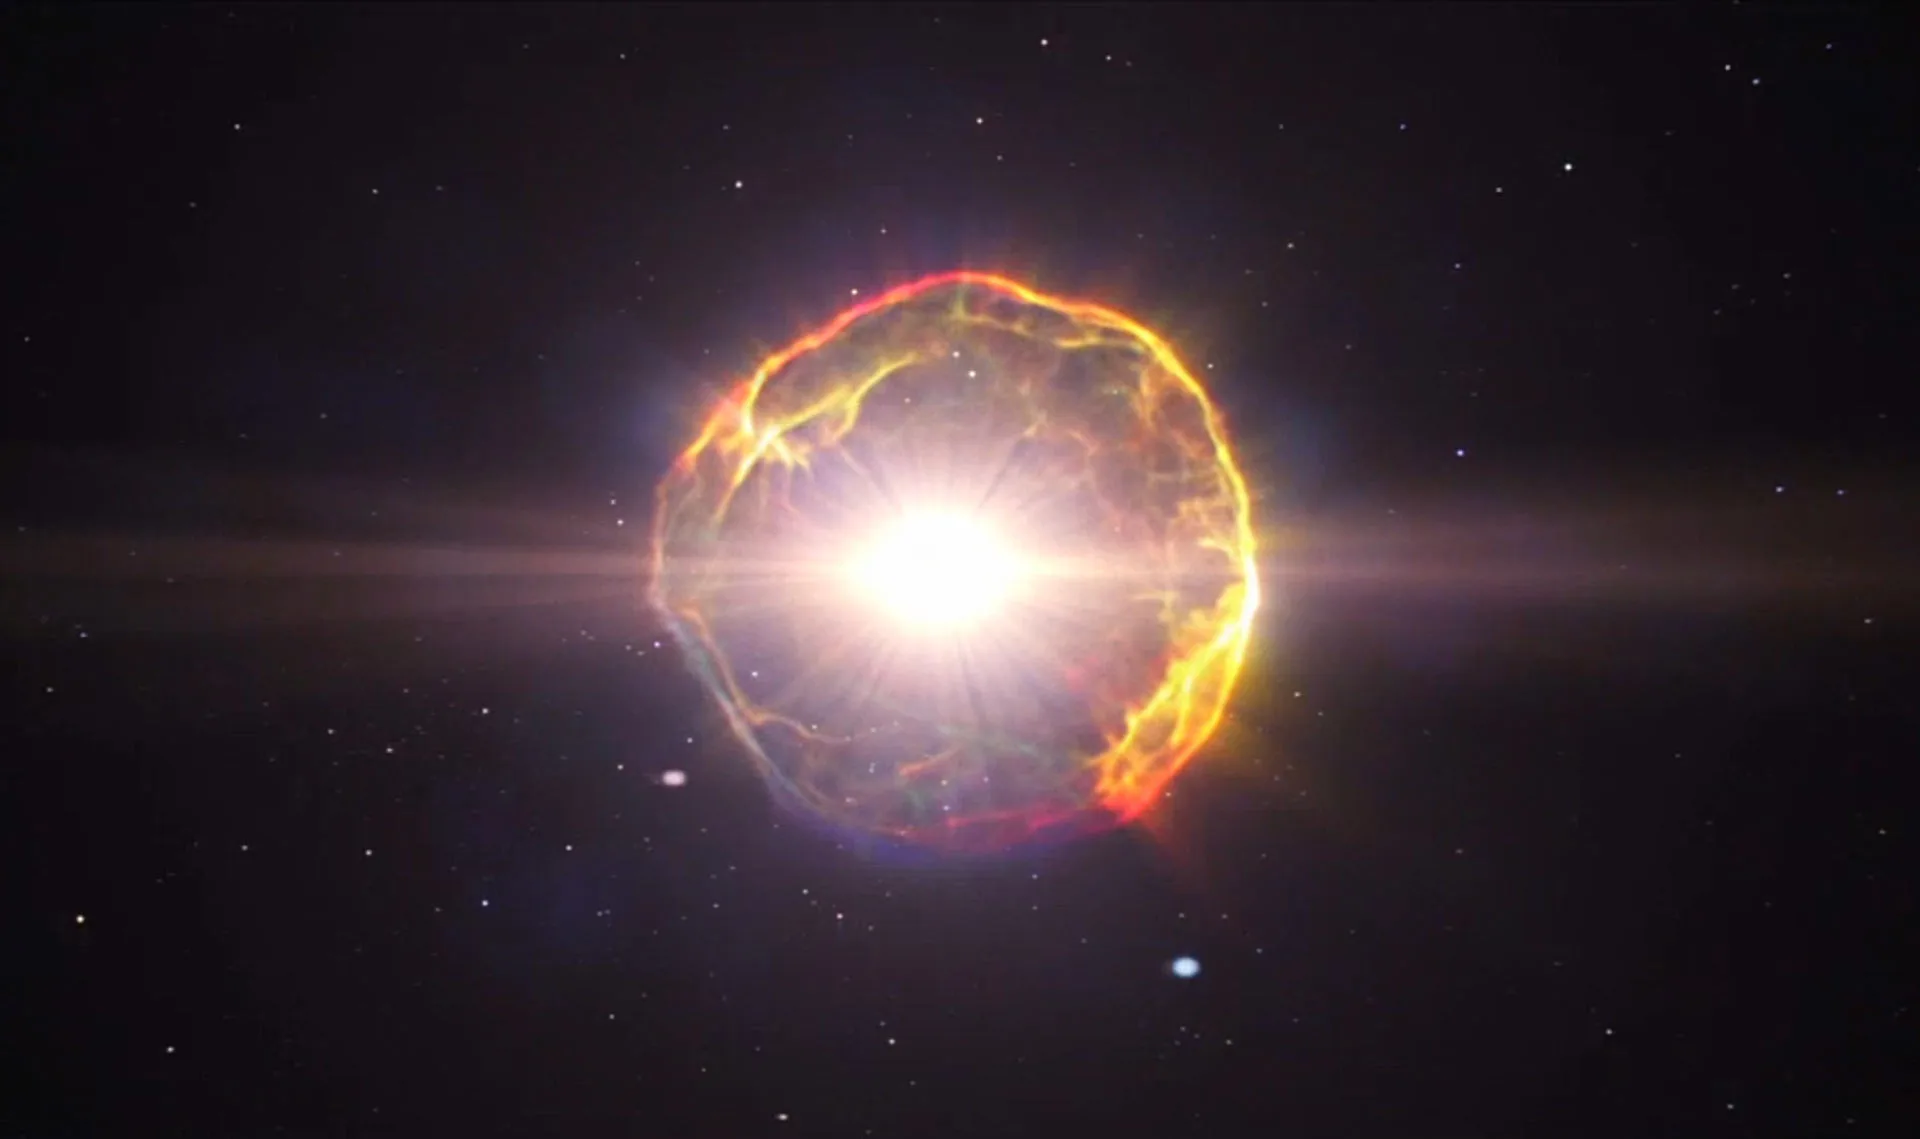 Le processus triple alpha dans les supernovae présente un nouveau mystère